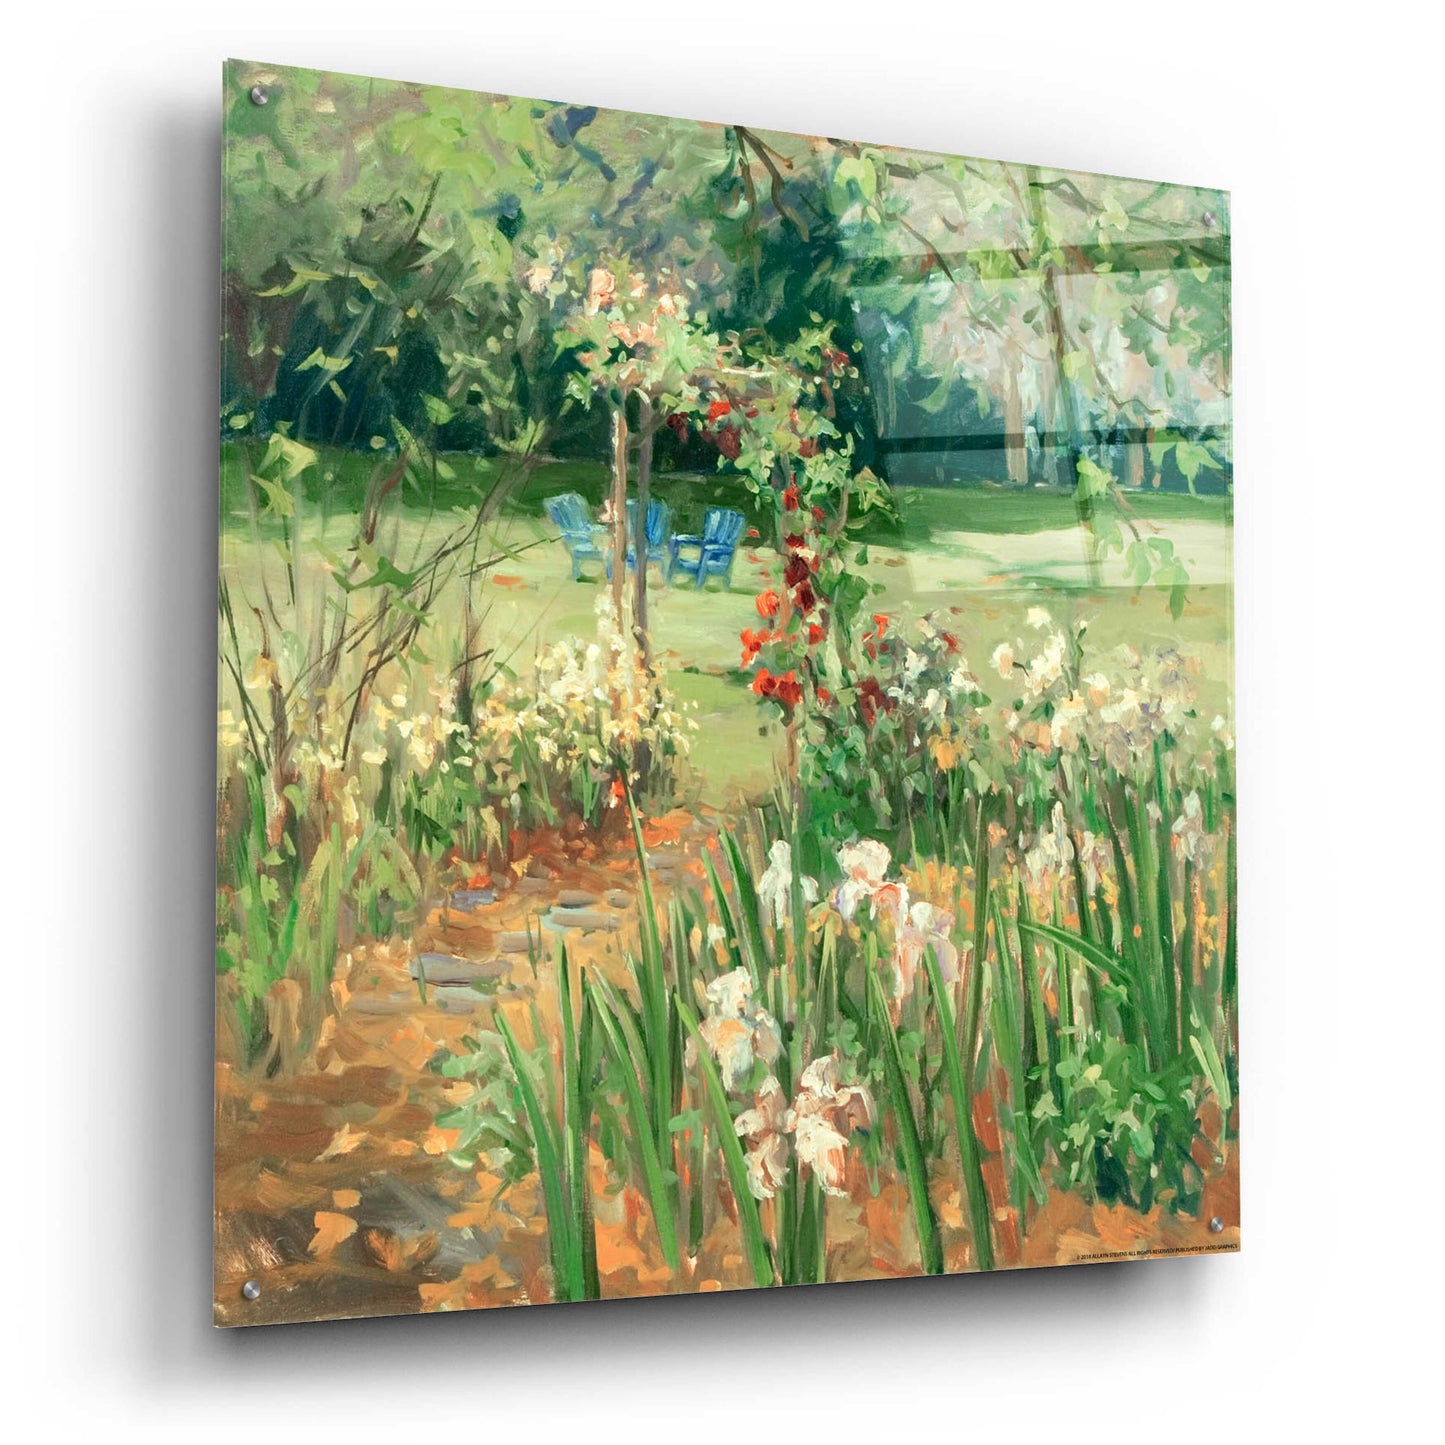 Epic Art 'Iris Garden' by Allayn Stevens, Acrylic Glass Wall Art,36x36